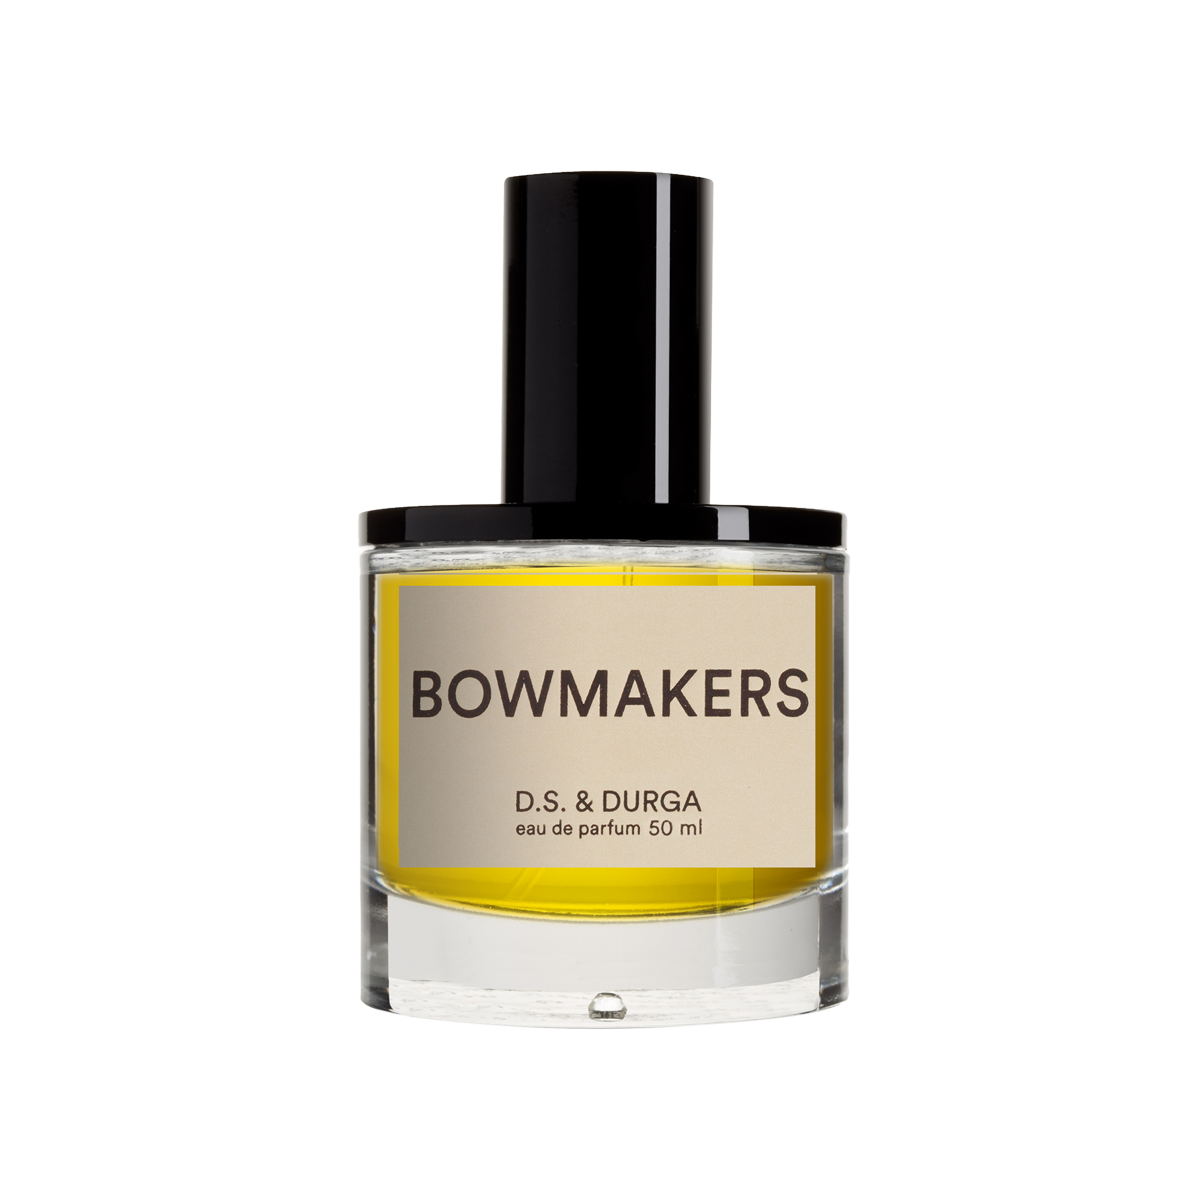 D.S. & DURGA - Bowmakers Eau de Parfum